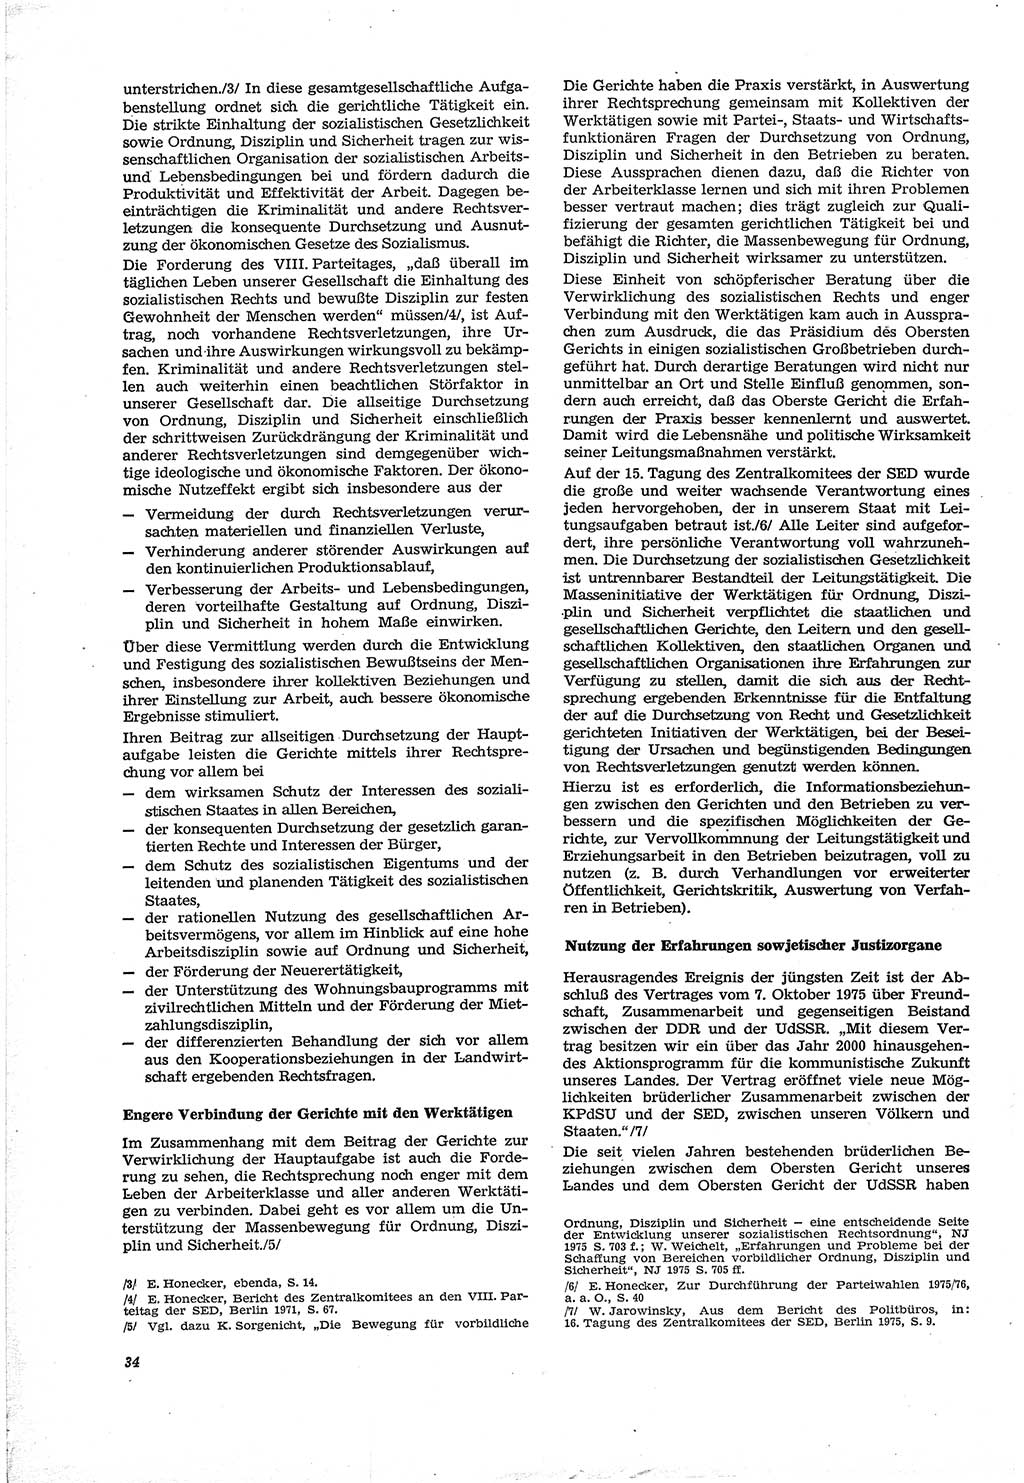 Neue Justiz (NJ), Zeitschrift für Recht und Rechtswissenschaft [Deutsche Demokratische Republik (DDR)], 30. Jahrgang 1976, Seite 34 (NJ DDR 1976, S. 34)